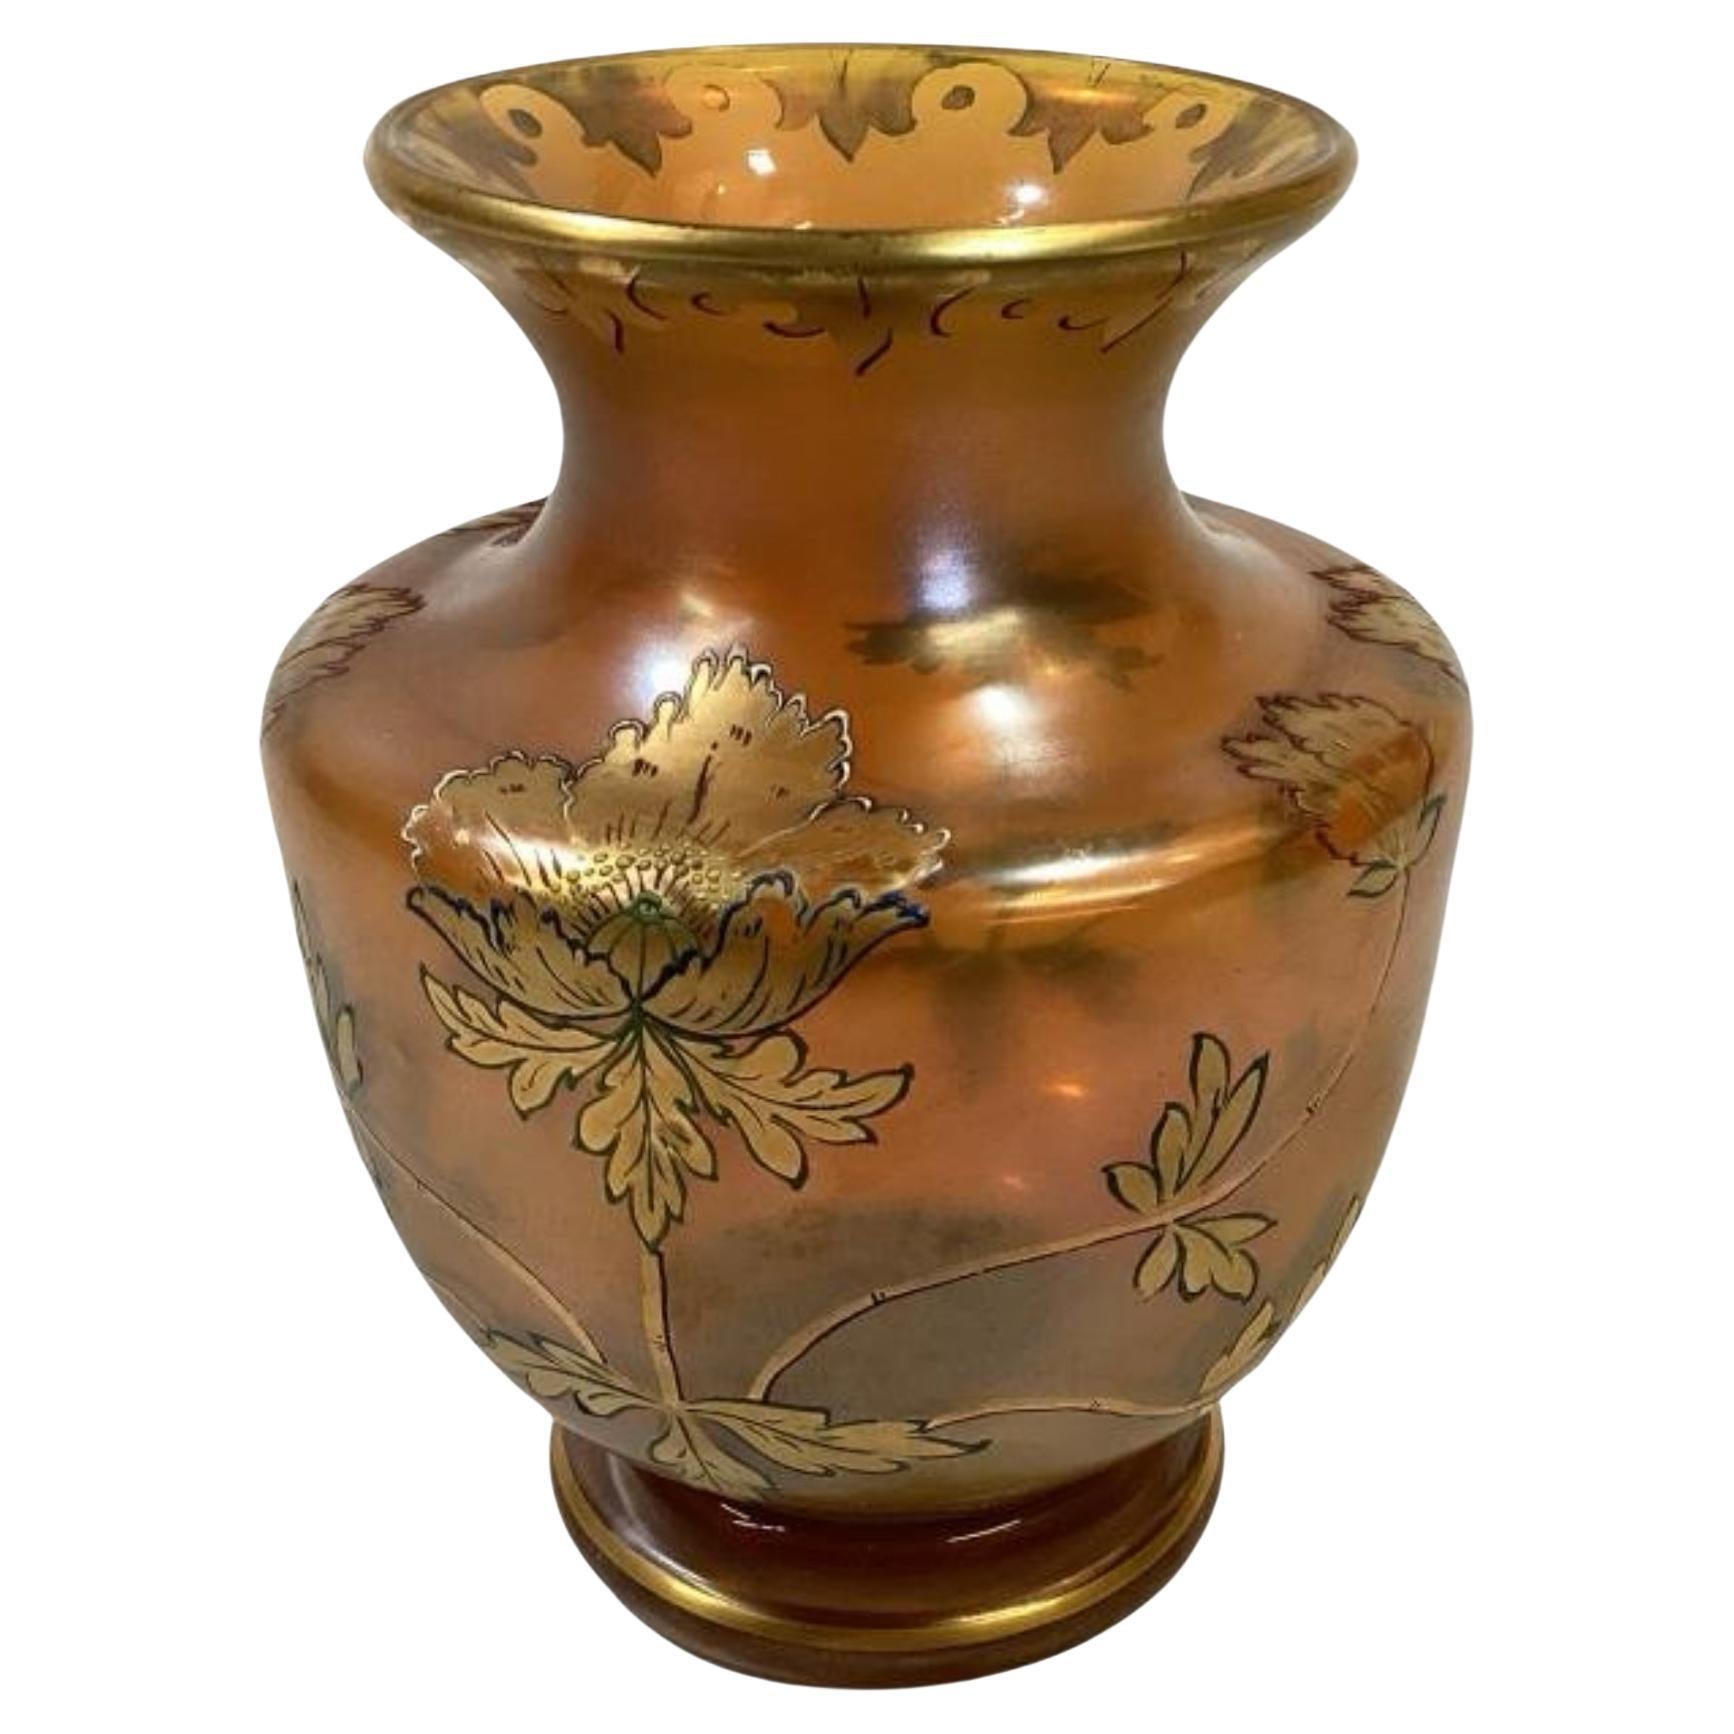 Fritz Heckert Art Nouveau Iridescent Art Glass Vase 